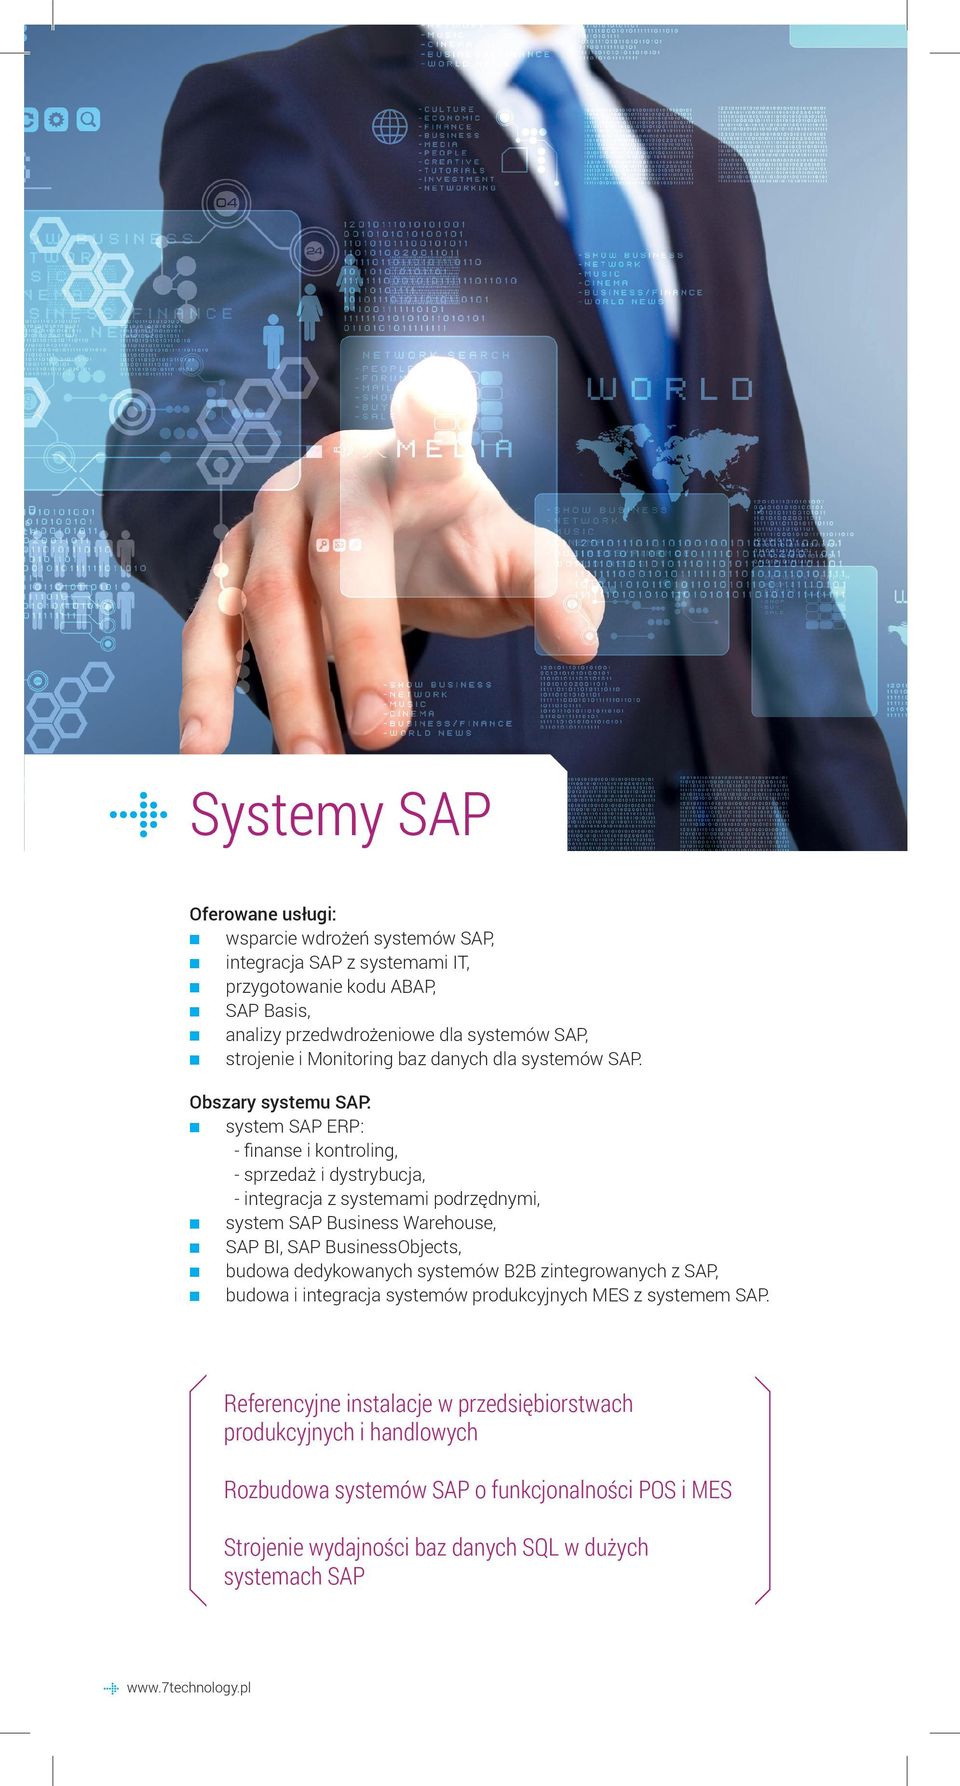 Obszary systemu SAP: system SAP ERP: - finanse i kontroling, - sprzedaż i dystrybucja, - integracja z systemami podrzędnymi, system SAP Business Warehouse, SAP BI, SAP